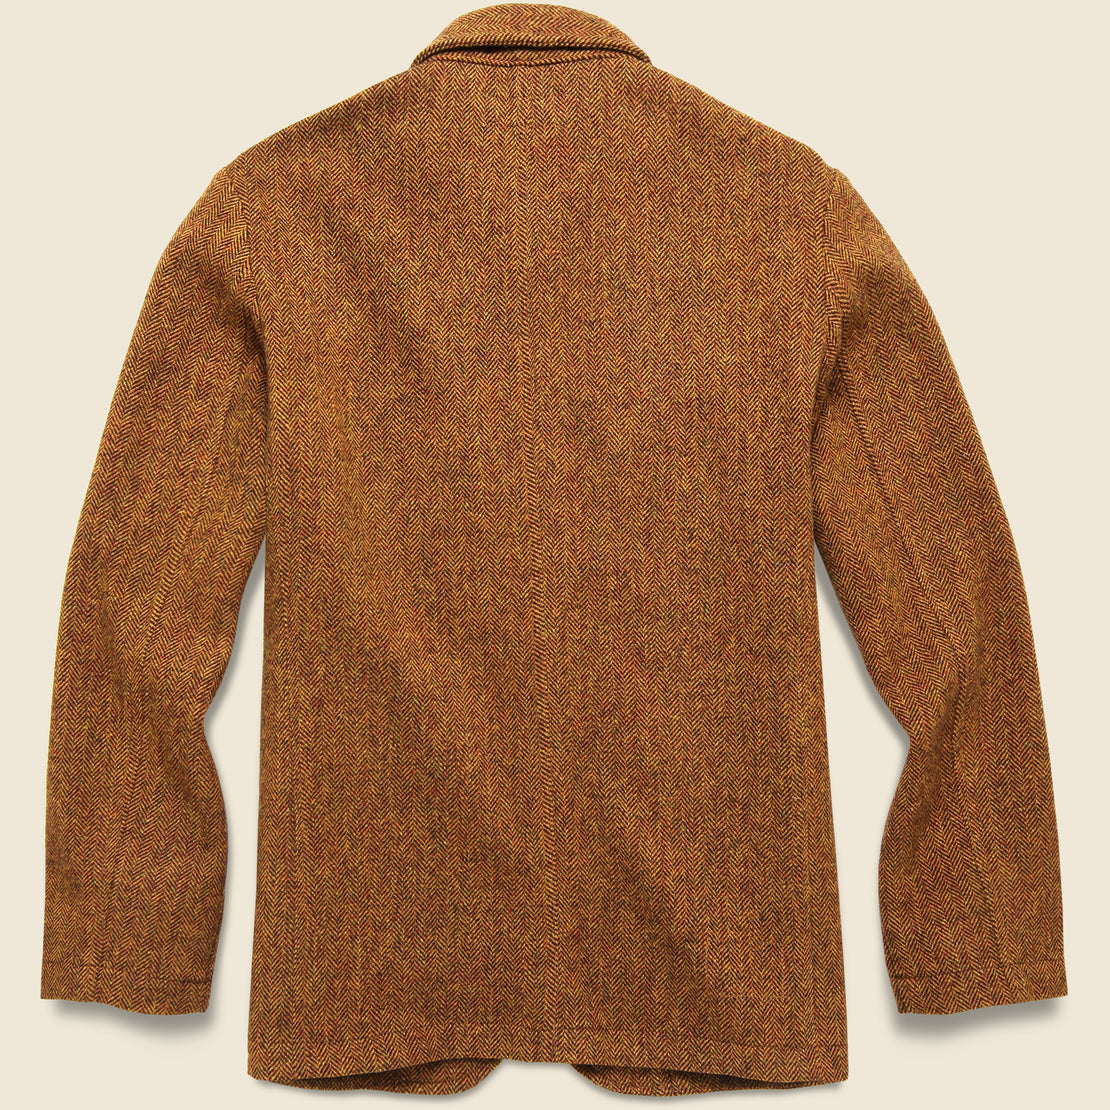 Simple Wool Bakers Jacket - Orange Herringbone - Universal Works - STAG Provisions - Outerwear - Coat / Jacket